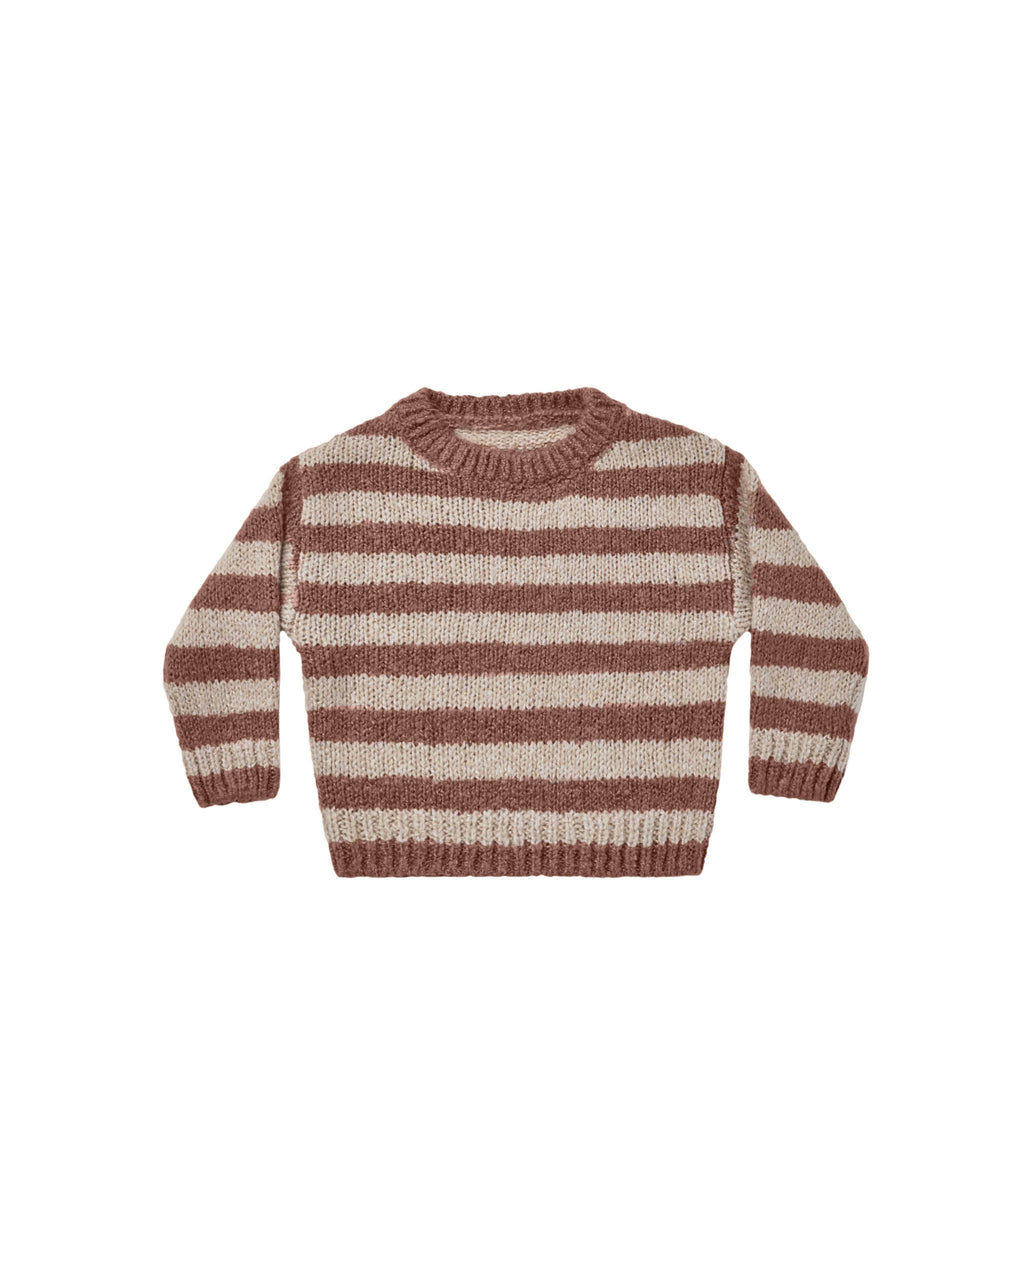 Rylee + Cru Aspen Sweater - Mocha Stripe